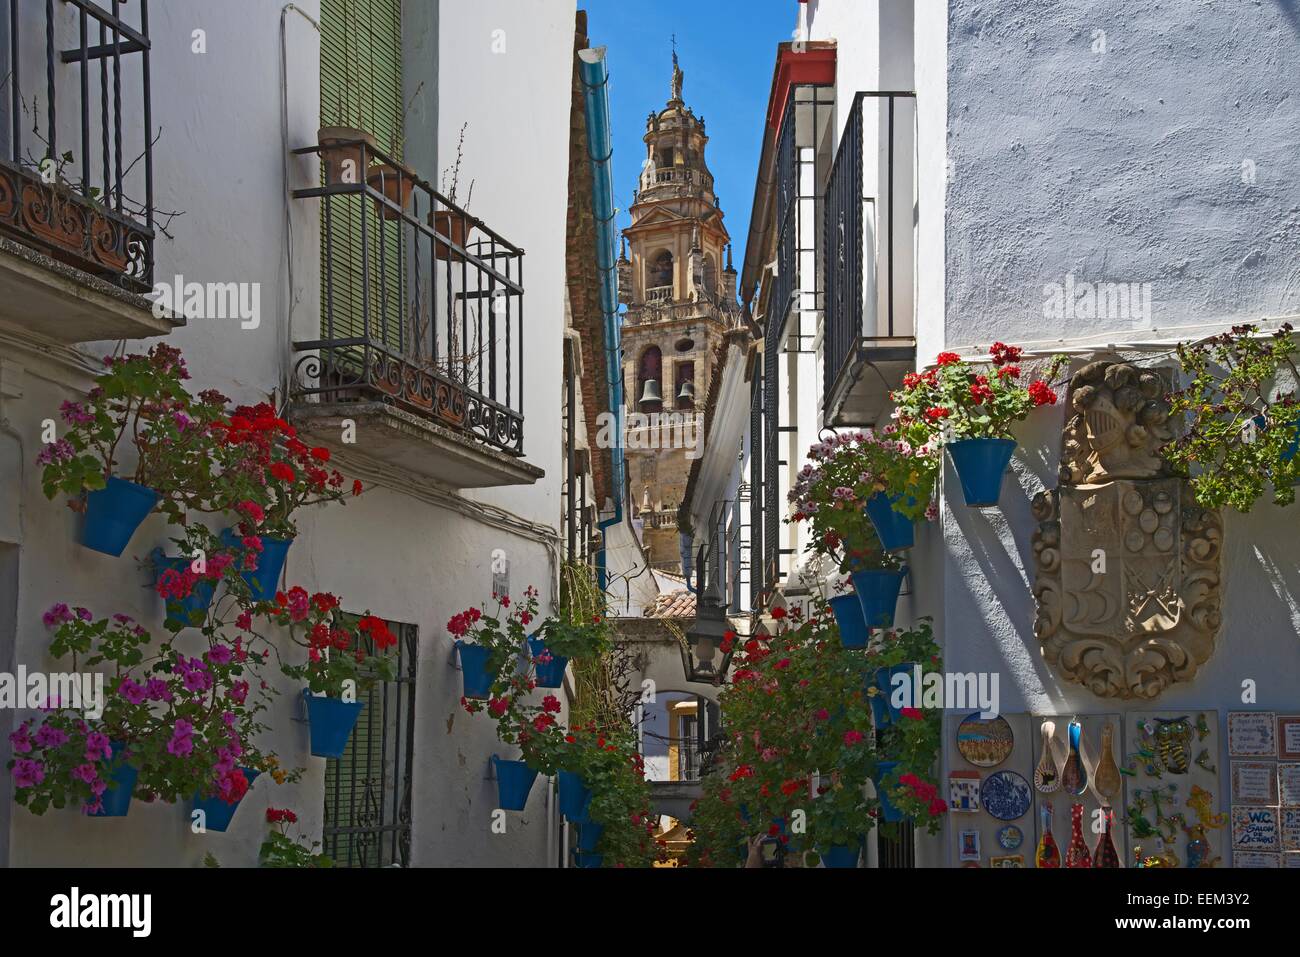 Calle de las Flores with flowers, Córdoba province, Andalucía, Spain Stock Photo